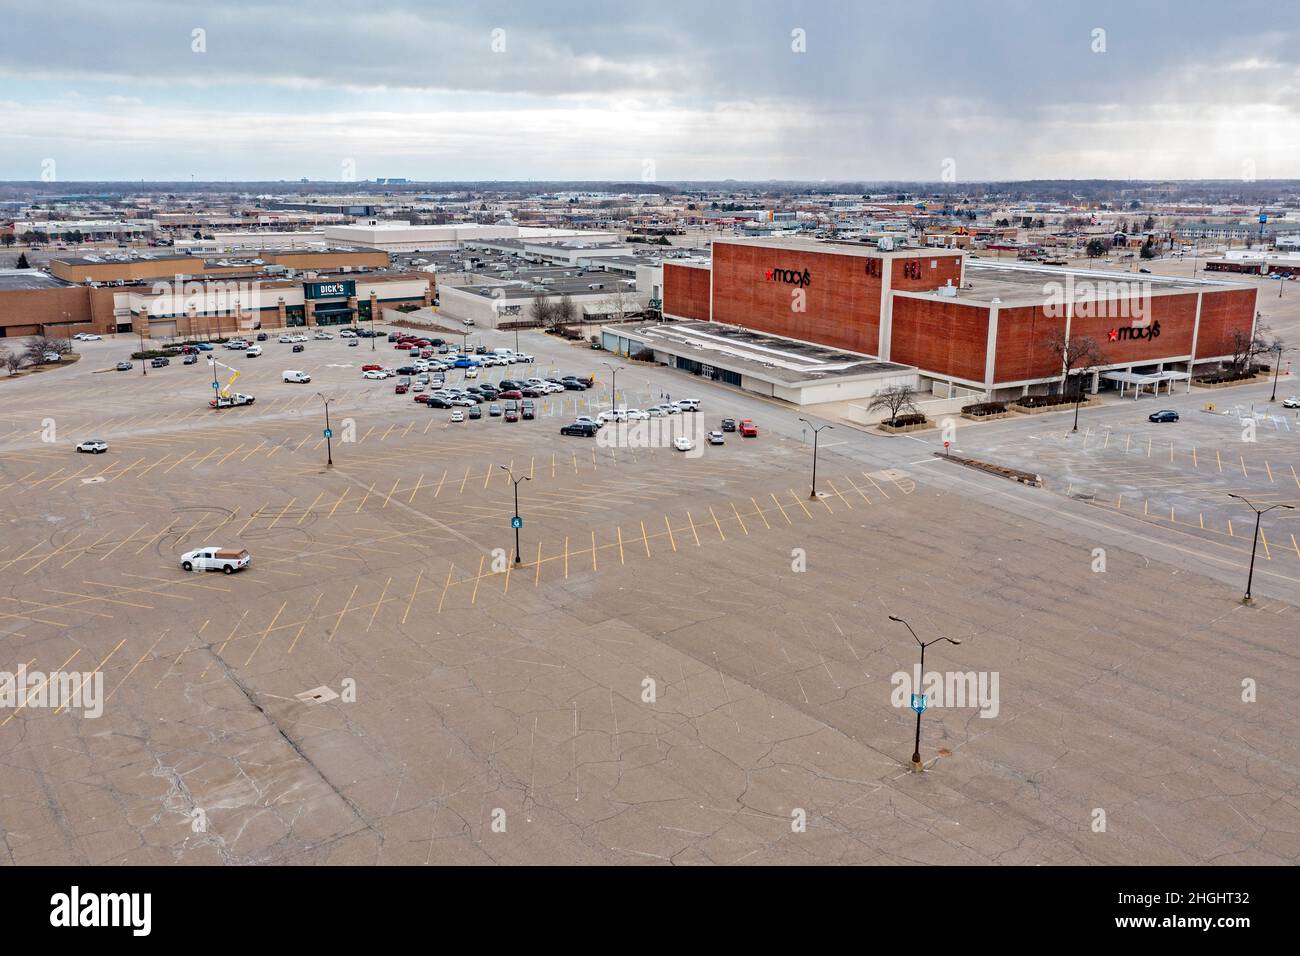 Troy, Michigan - Un parking en grande partie vide au centre commercial Oakland Mall, un centre commercial régional dans la banlieue de Detroit, pendant la pandémie Covid-19. Banque D'Images